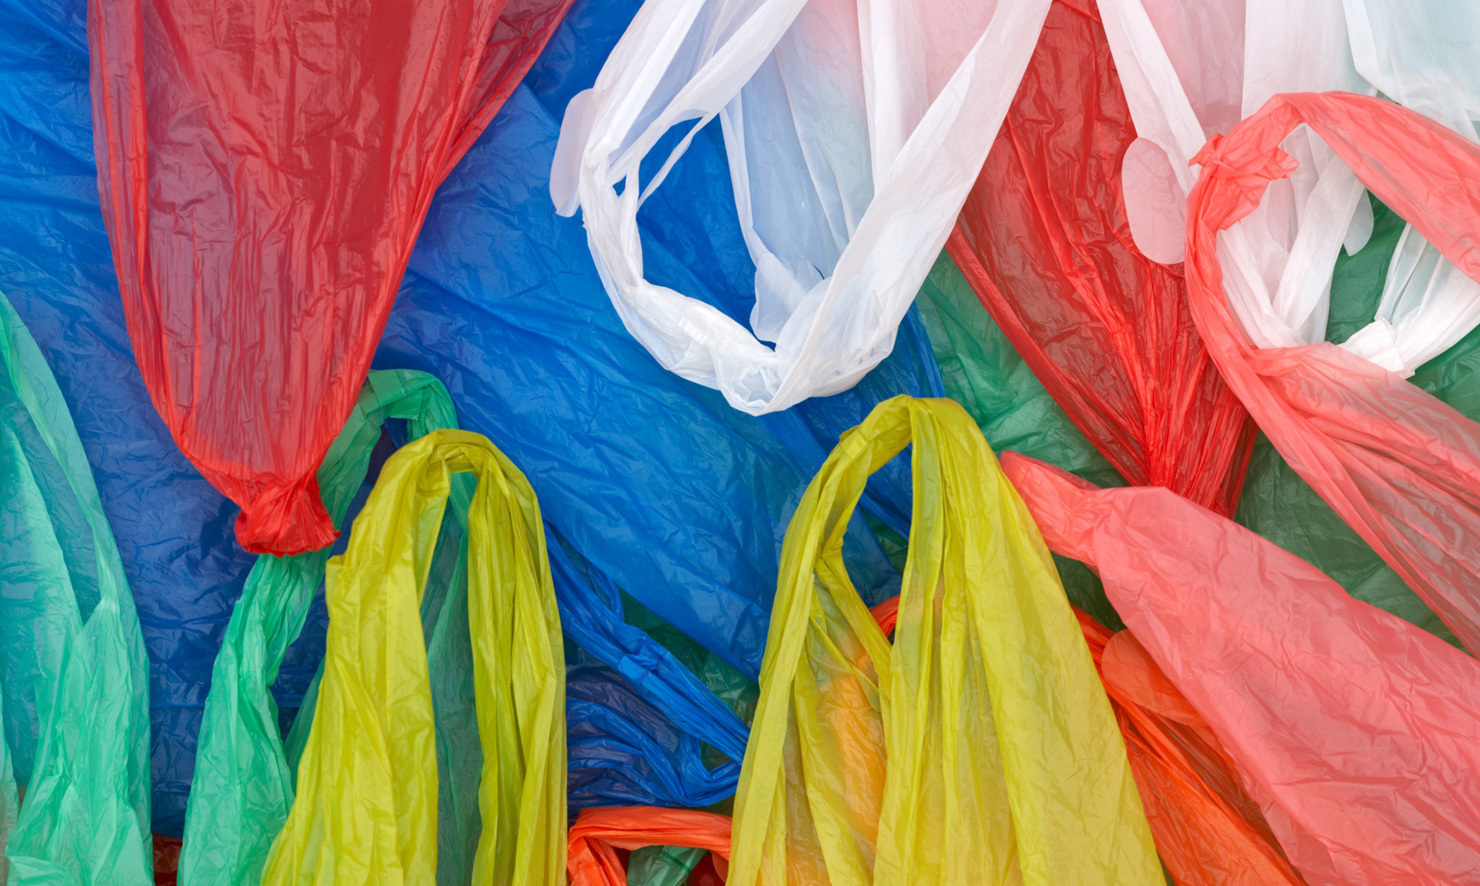 Cử tri tỉnh Bình Dương kiến nghị tăng thuế cao đối với các sản phẩm từ túi nhựa để hạn chế sử dụng, khắc phục tình trạng gây ô nhiễm môi trường như hiện nay. Nguồn: internet